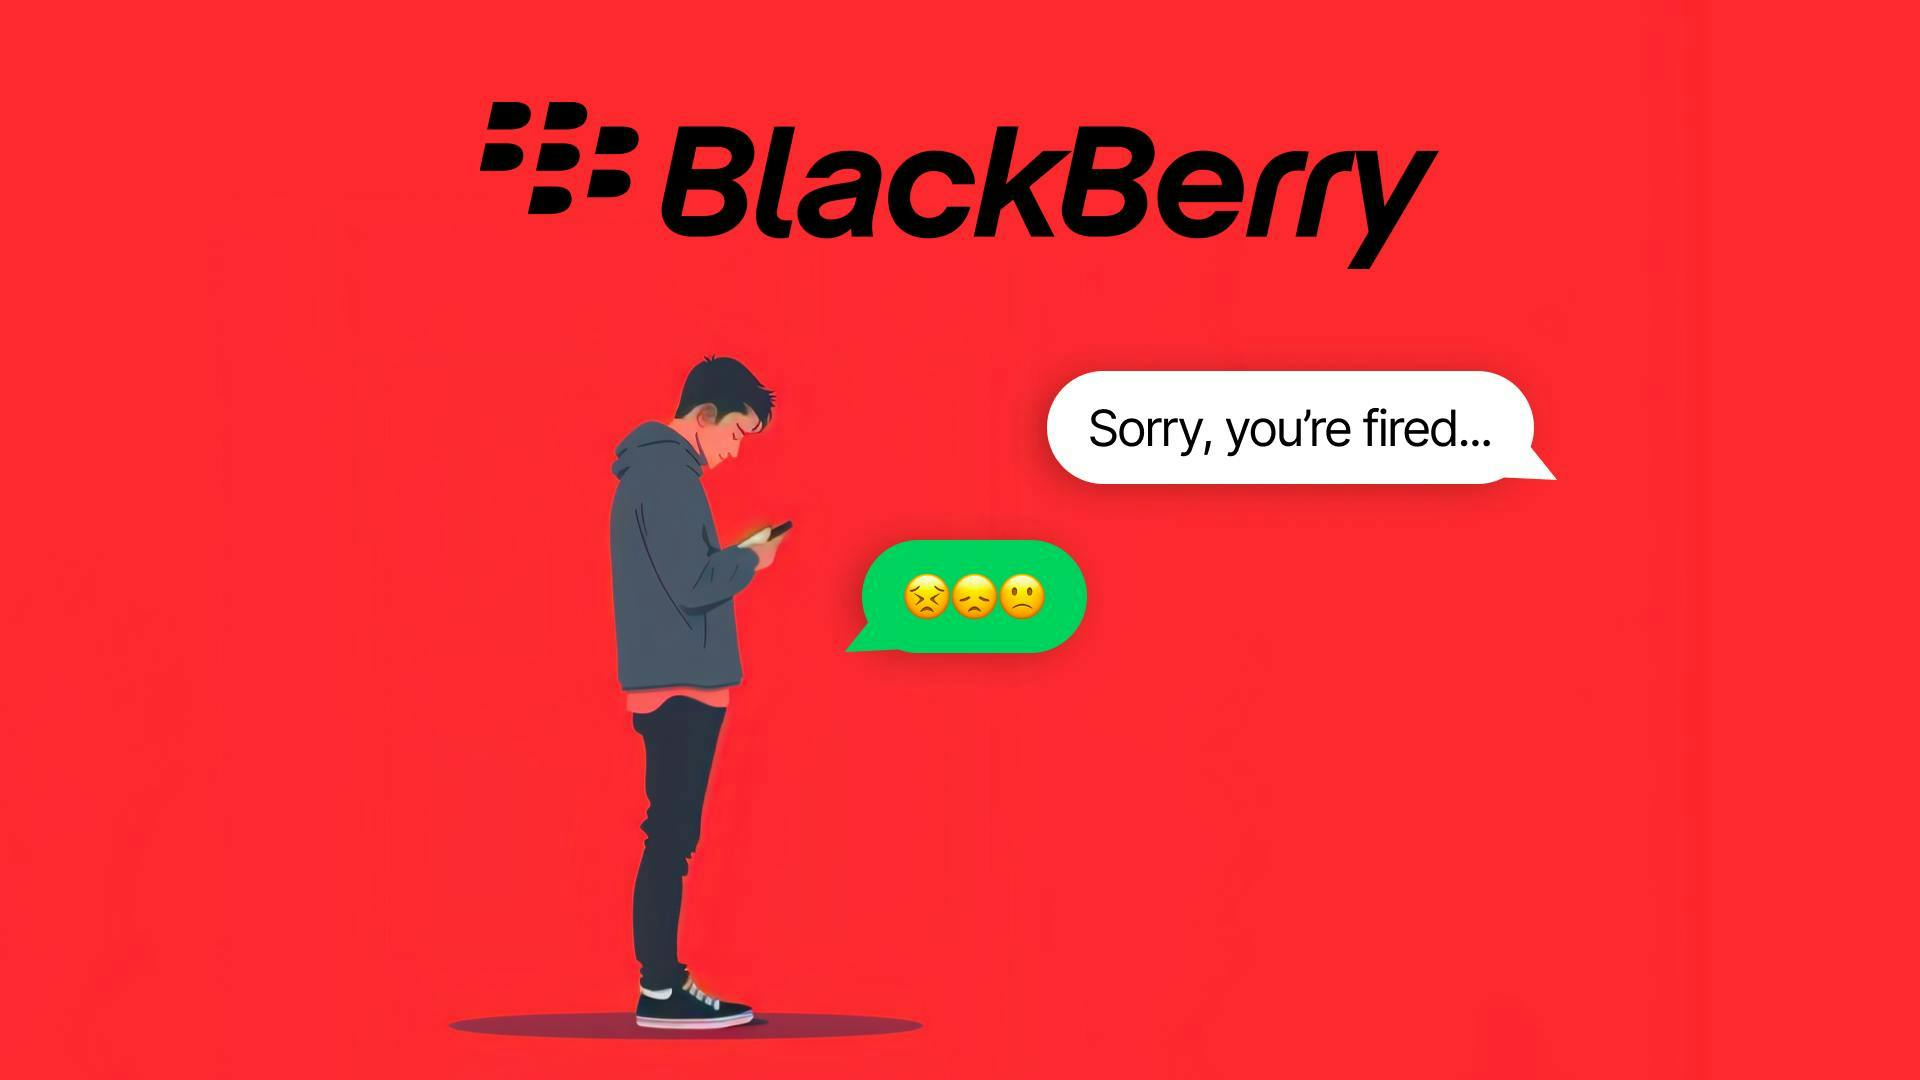 BlackBerry Announces Layoffs